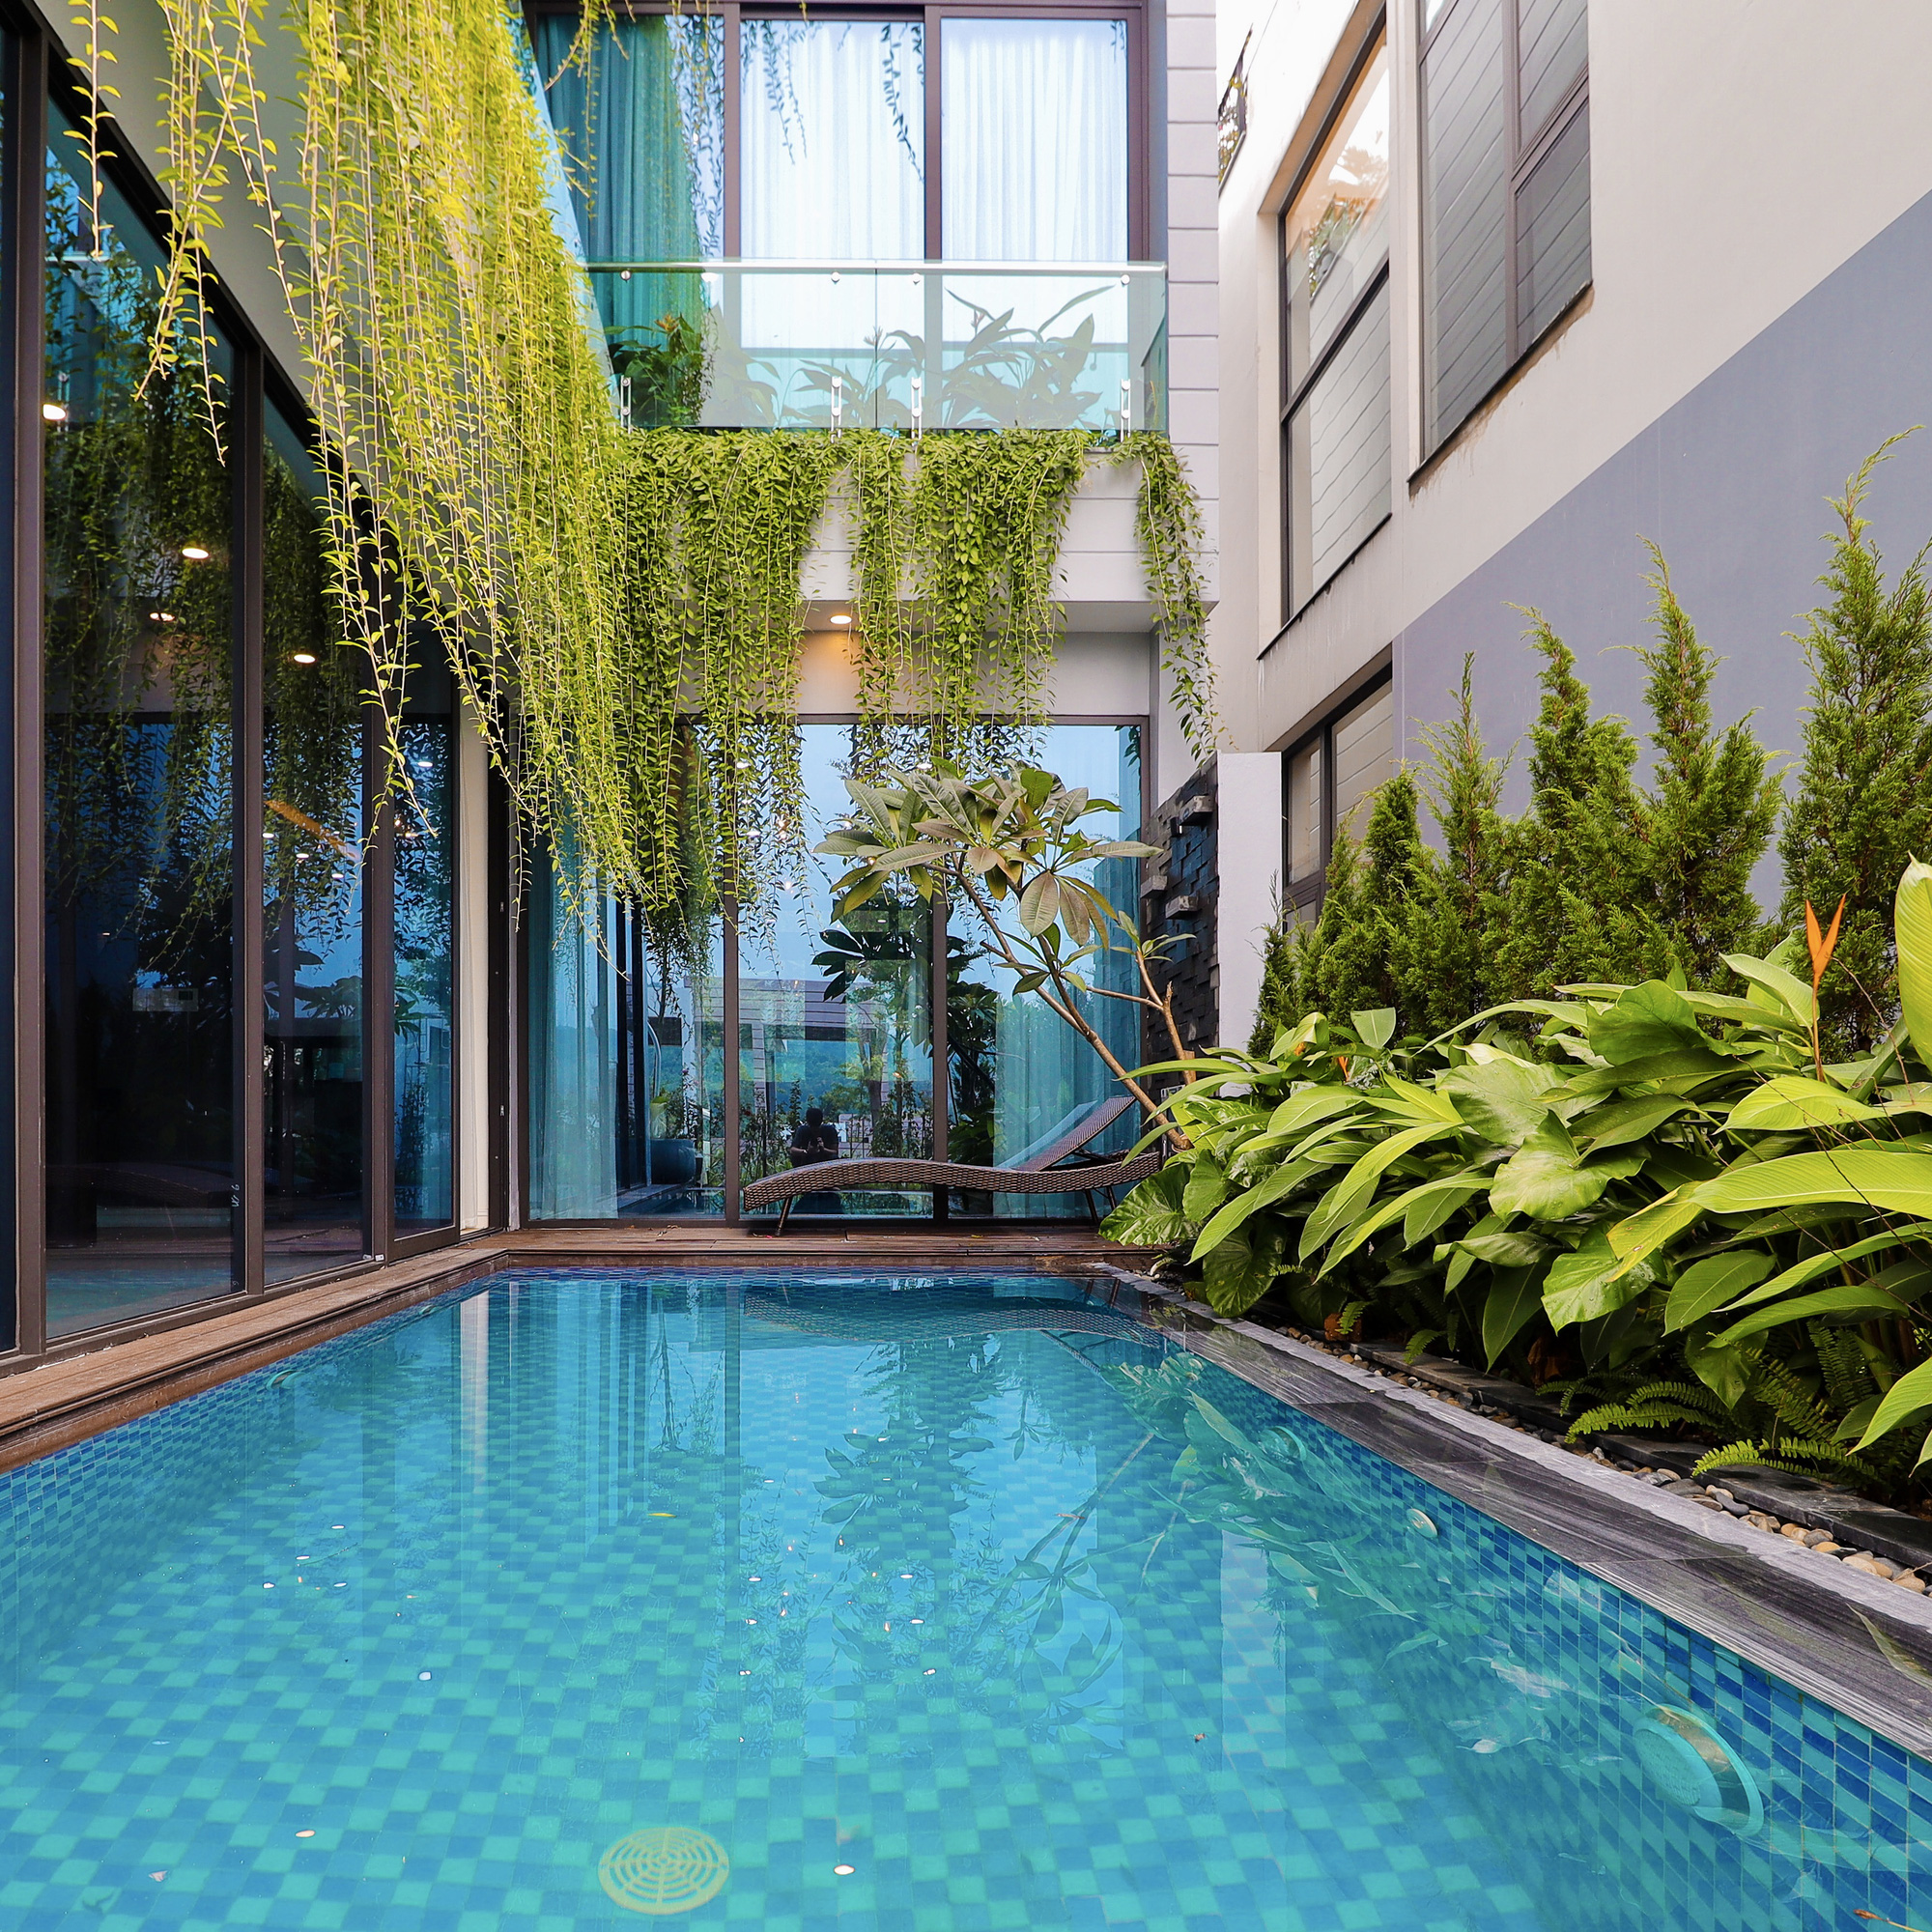 Căn nhà nhiều cây xanh với mảnh vườn bé xinh ở ngoại thành Hà Nội có chi phí hoàn thiện 3 tỷ đồng - Ảnh 6.